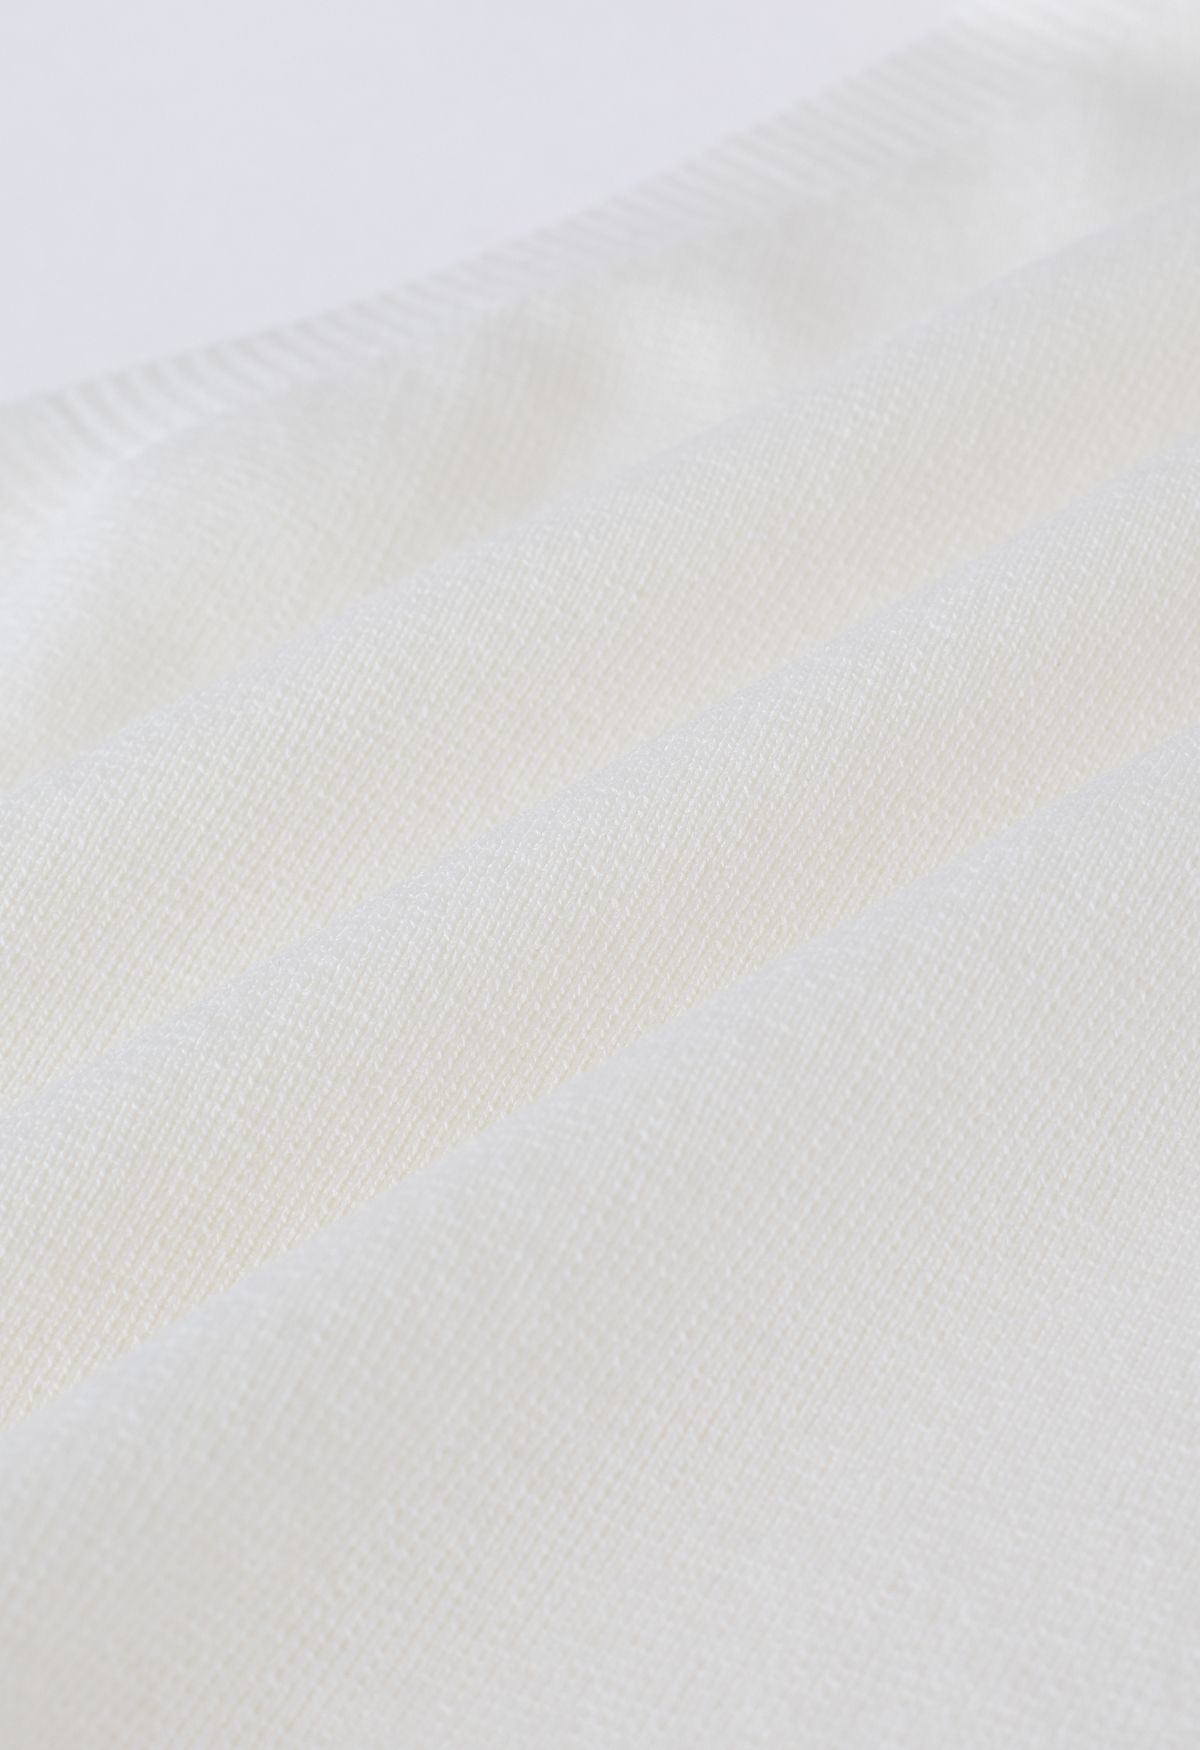 Asymmetric Halter Neck Knit Crop Top in White